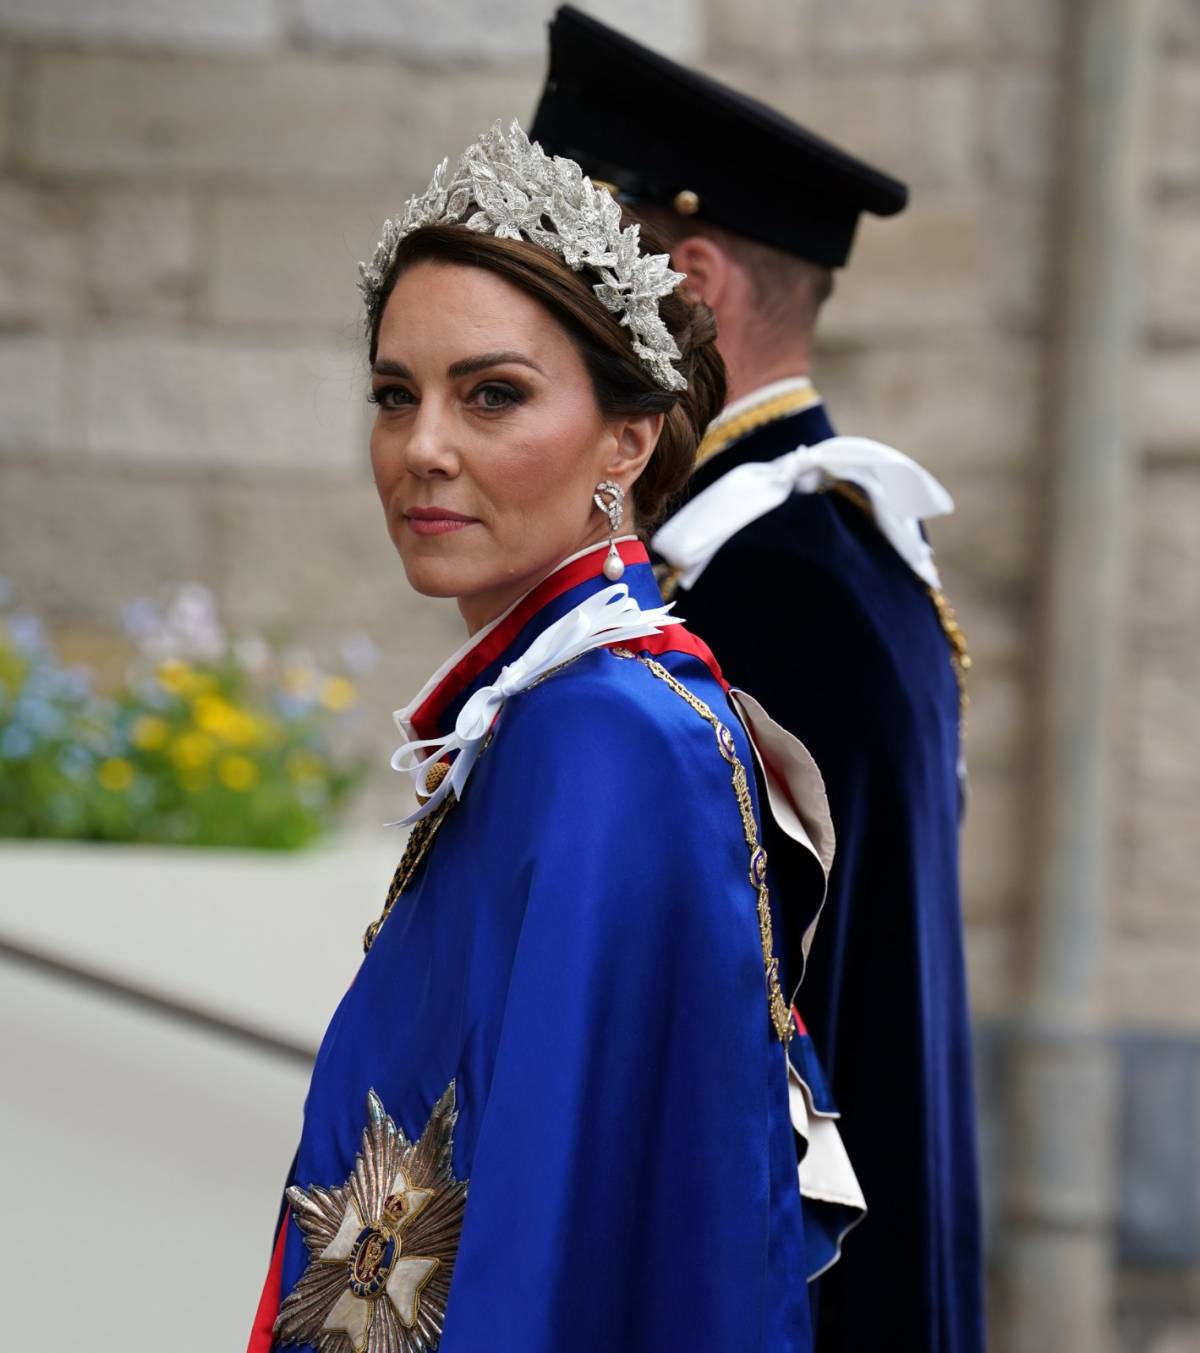 L'eleganza di Kate Middleton: la scelta dell'abito e la coroncina floreale 